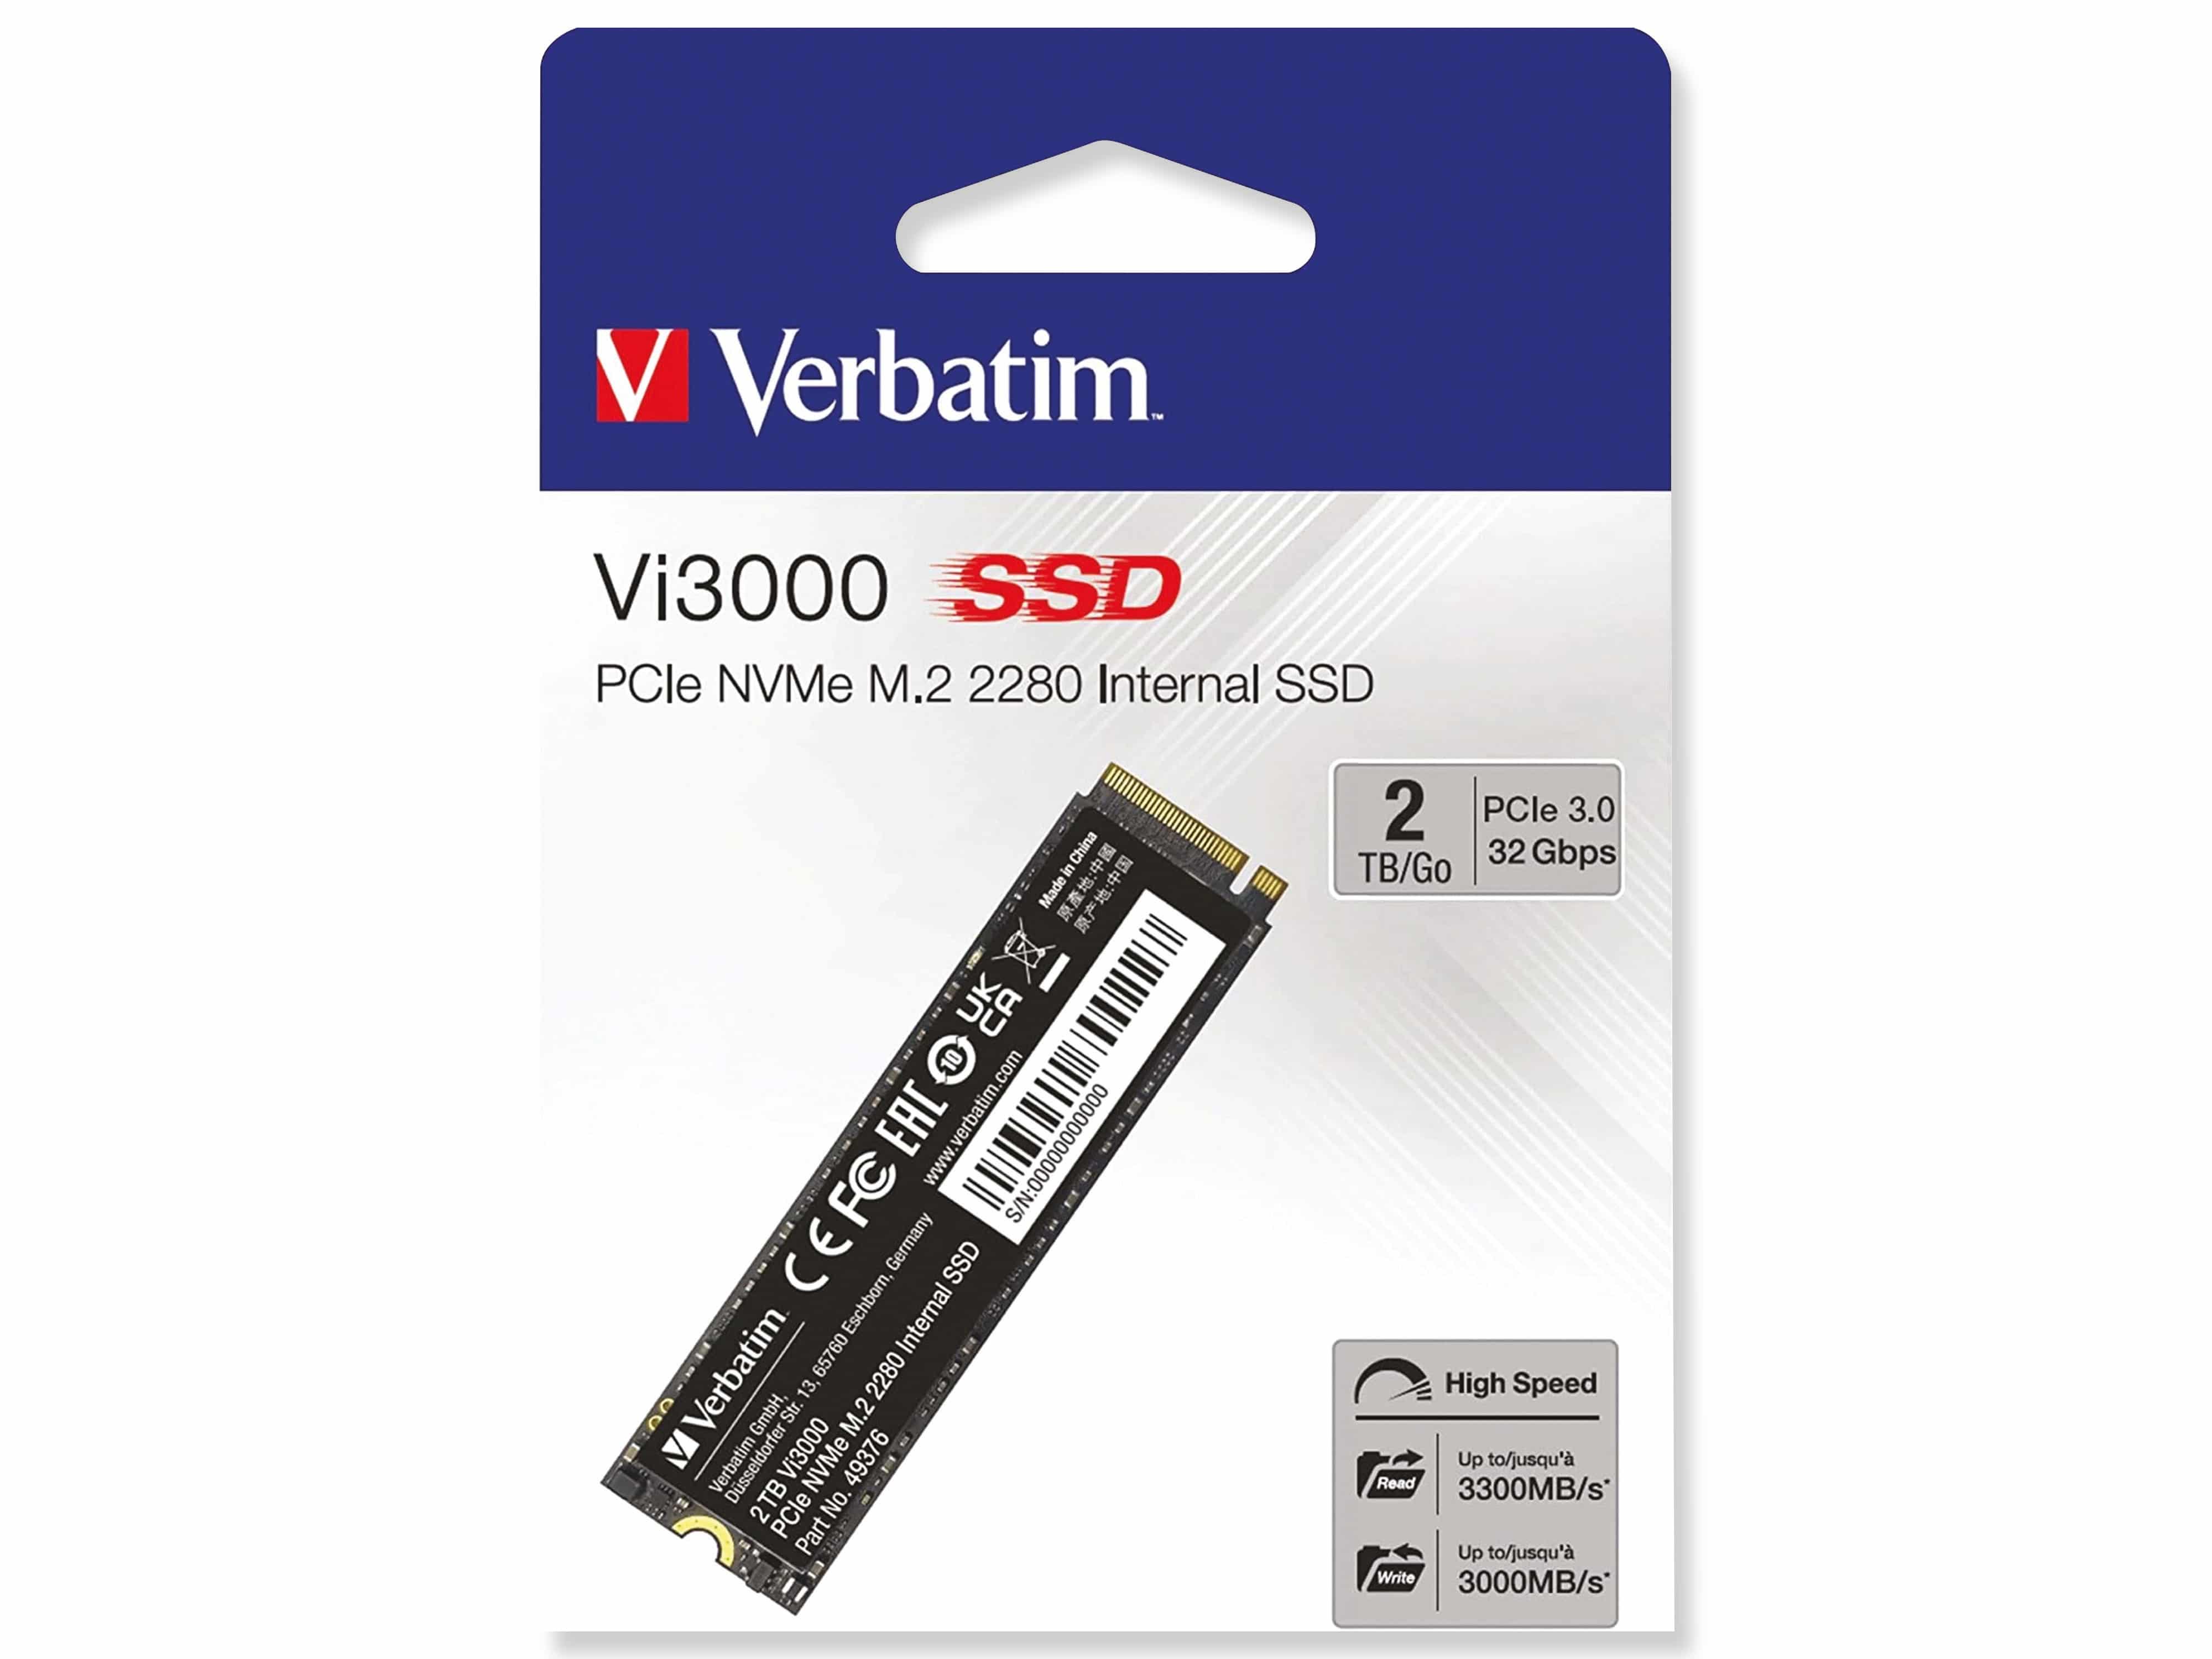 VERBATIM M.2 2280 SSD Vi3000, PCIe 3.0, 2 TB